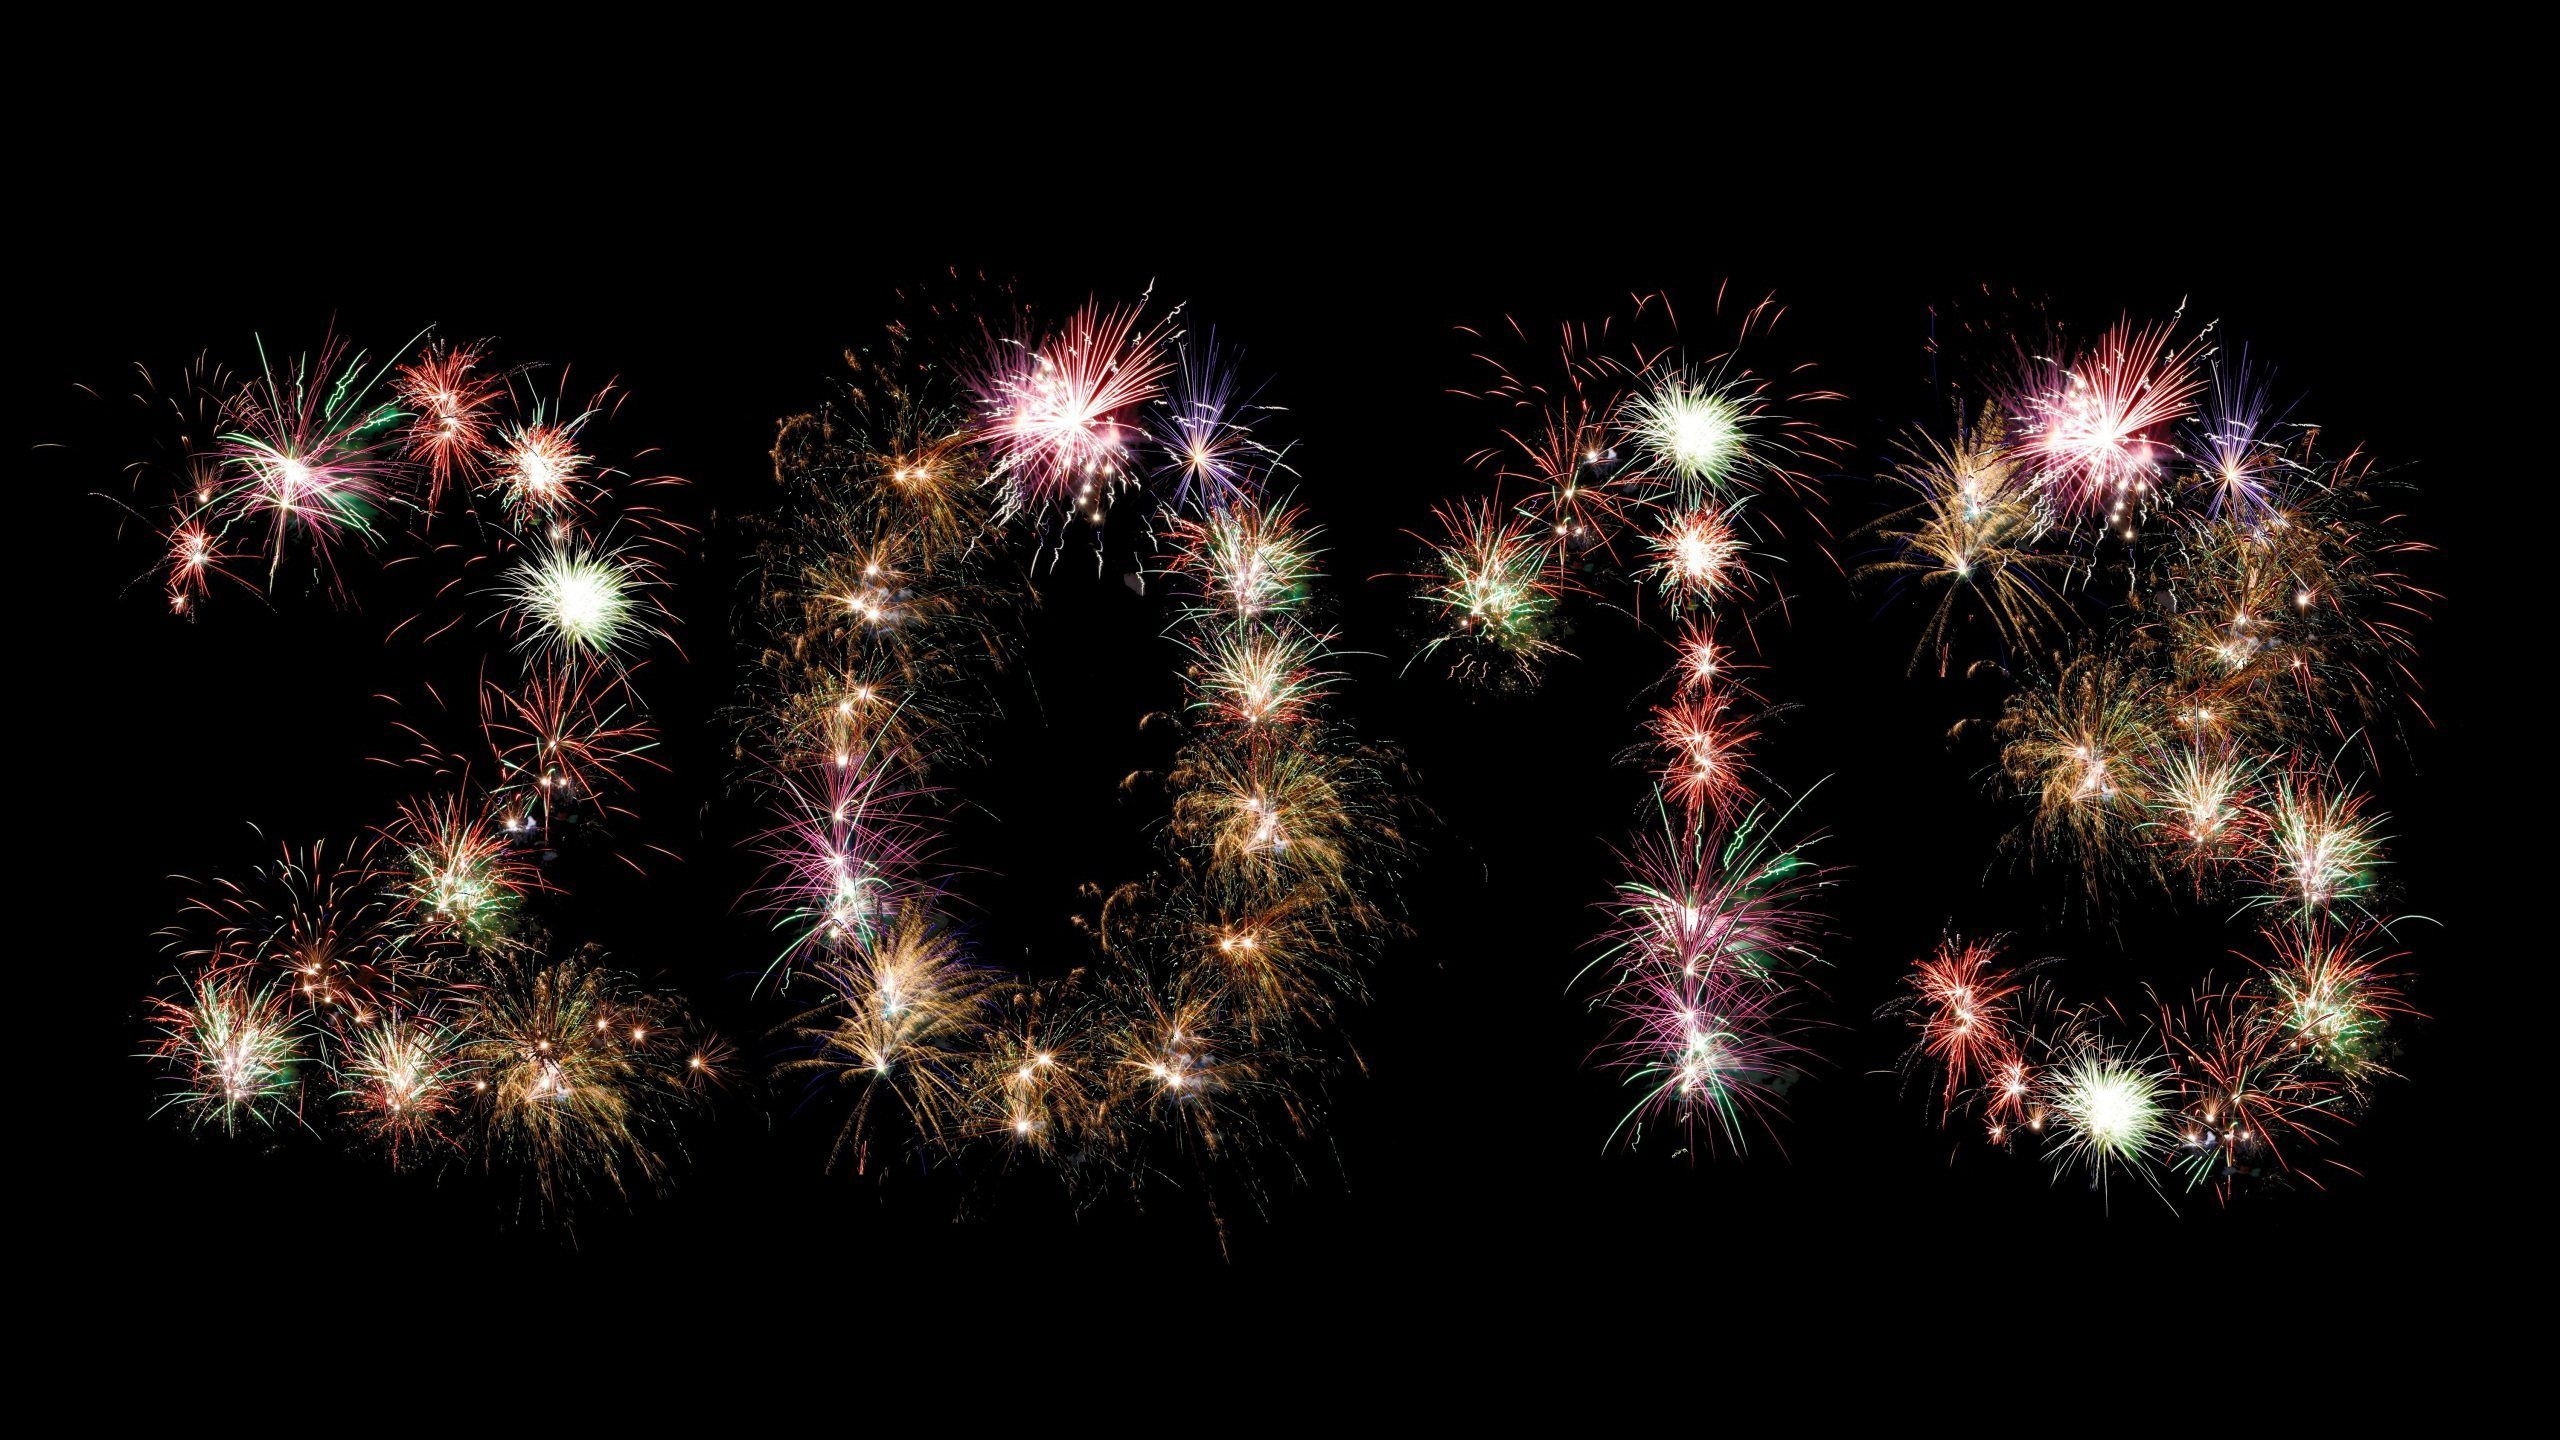 2013 Fireworks for 2560x1440 HDTV resolution